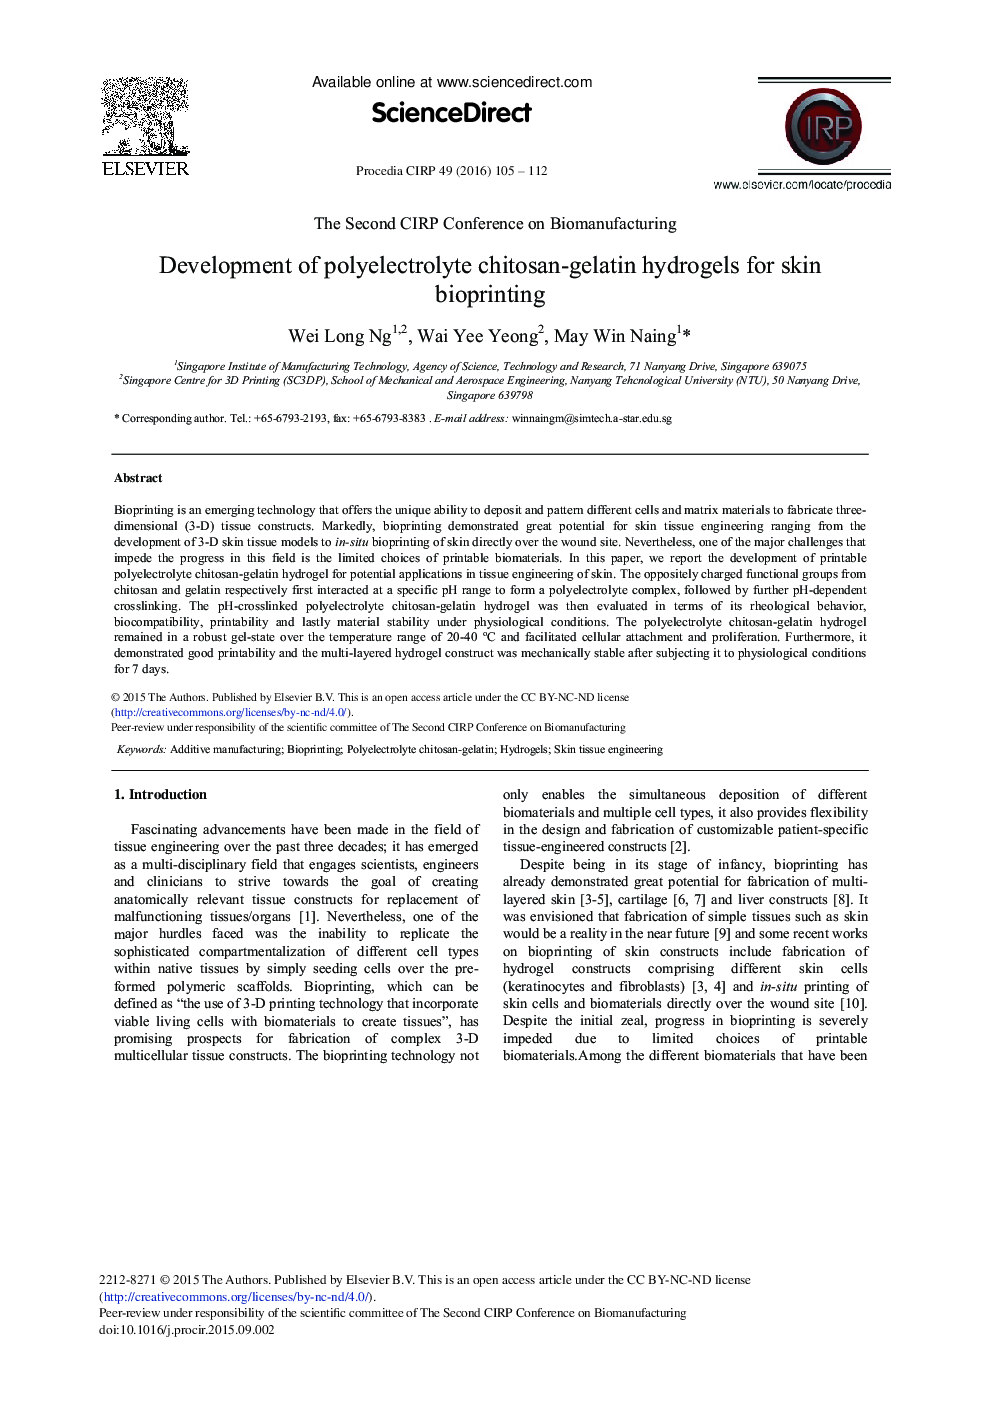 توسعه هیدروژل های چیاتوزان-ژلاتین پلی الکترولیتی برای بیوپینگ چاپ پوست 